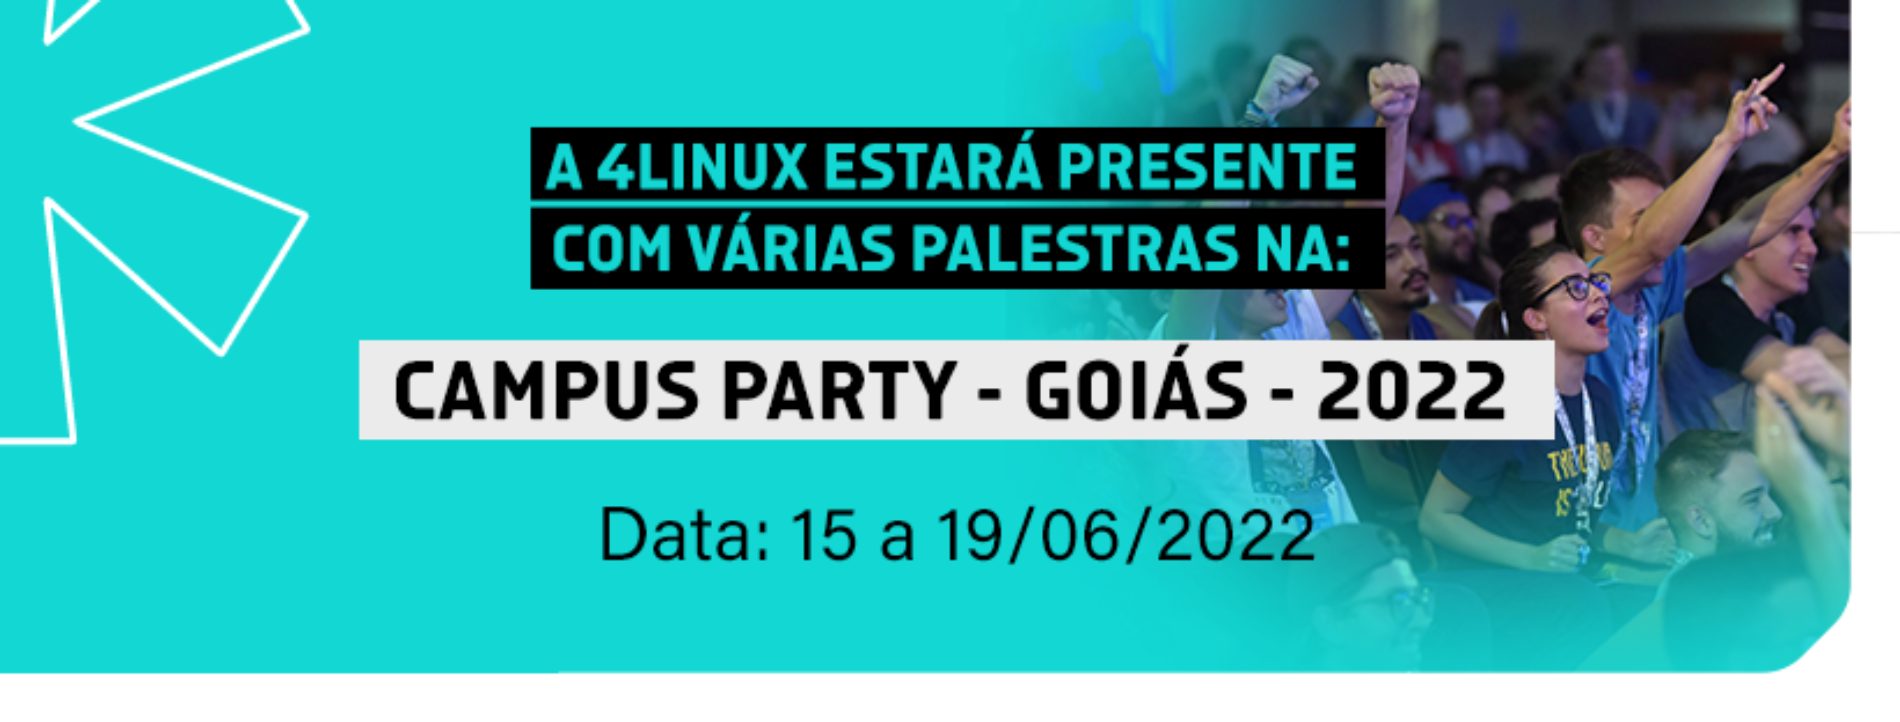 4Linux estará presente na Campus Party Goiás